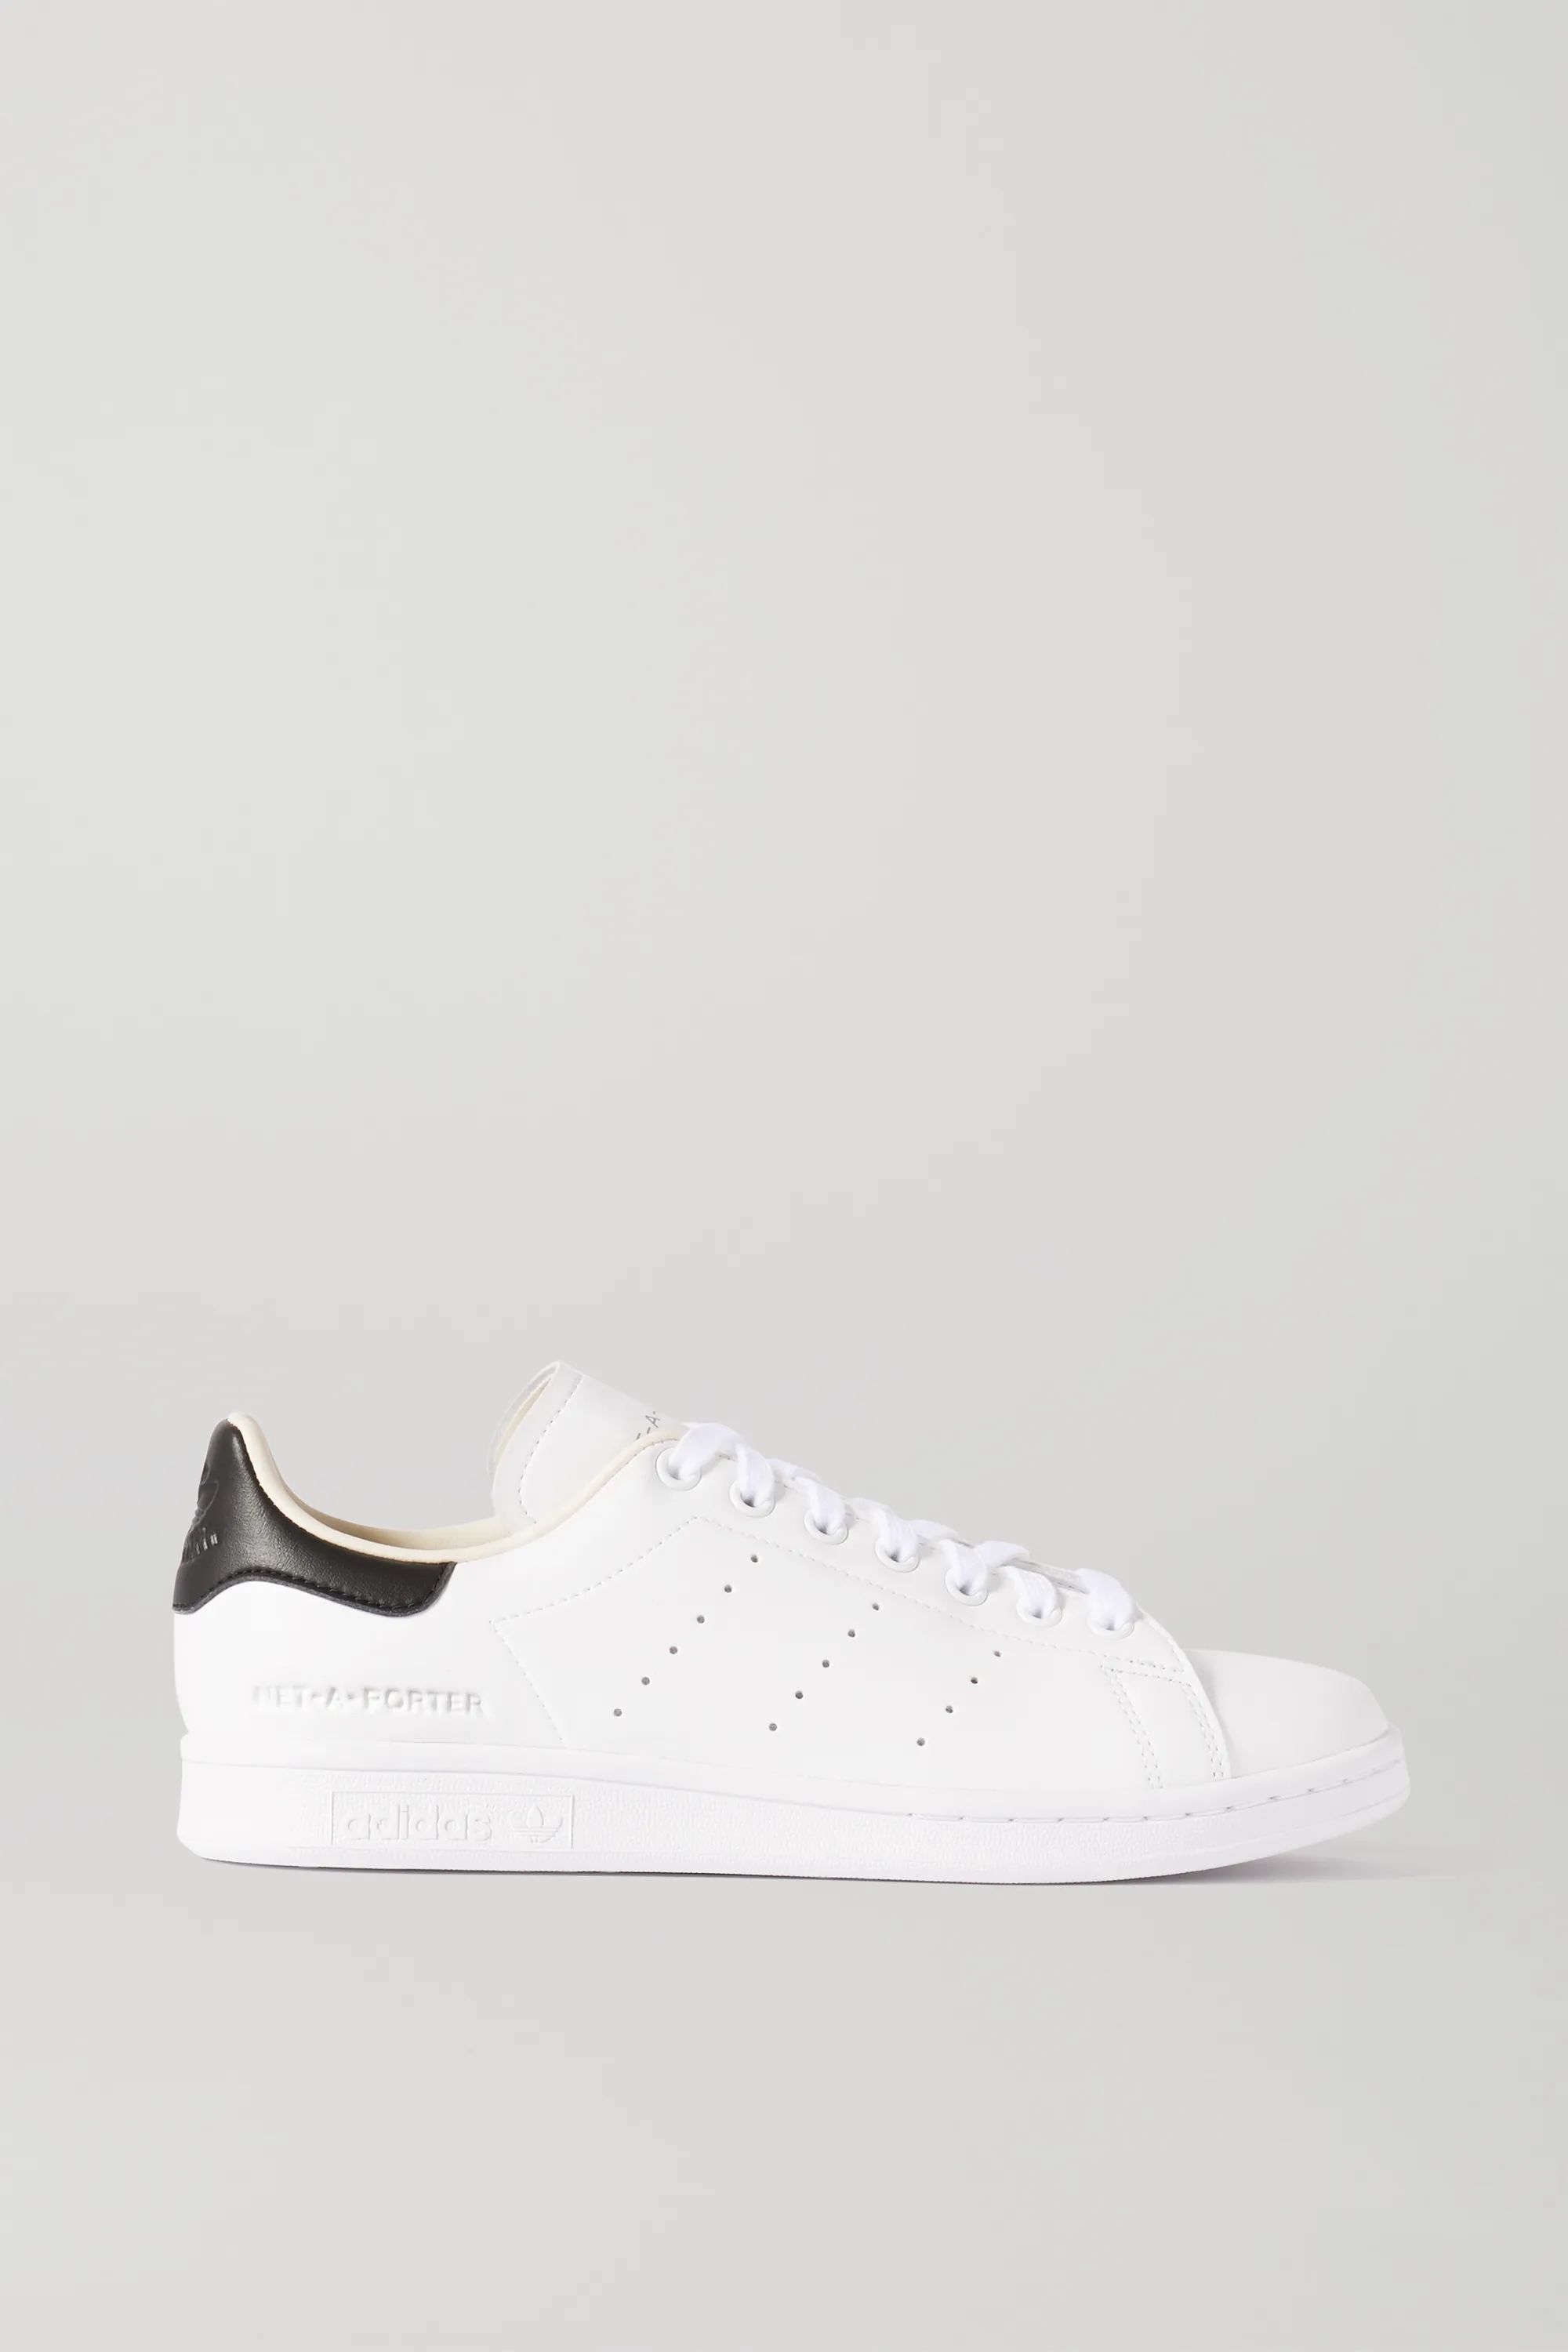 White + NET-A-PORTER Stan Smith vegan leather sneakers | adidas Originals | NET-A-PORTER | NET-A-PORTER (US)